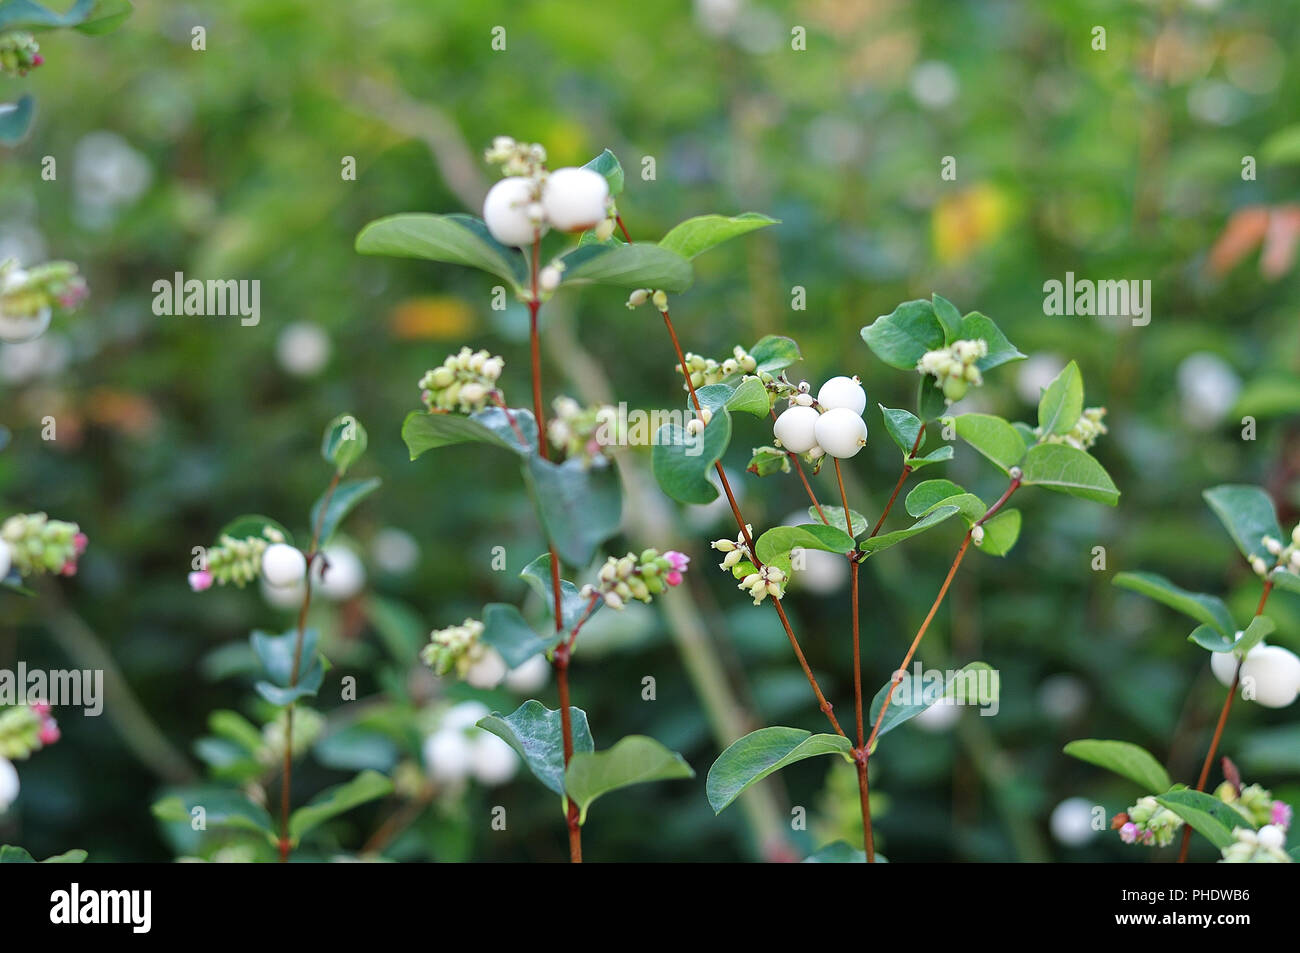 white fruits of a snowberry, symphoricarpos, close-up of a garden hedge Stock Photo